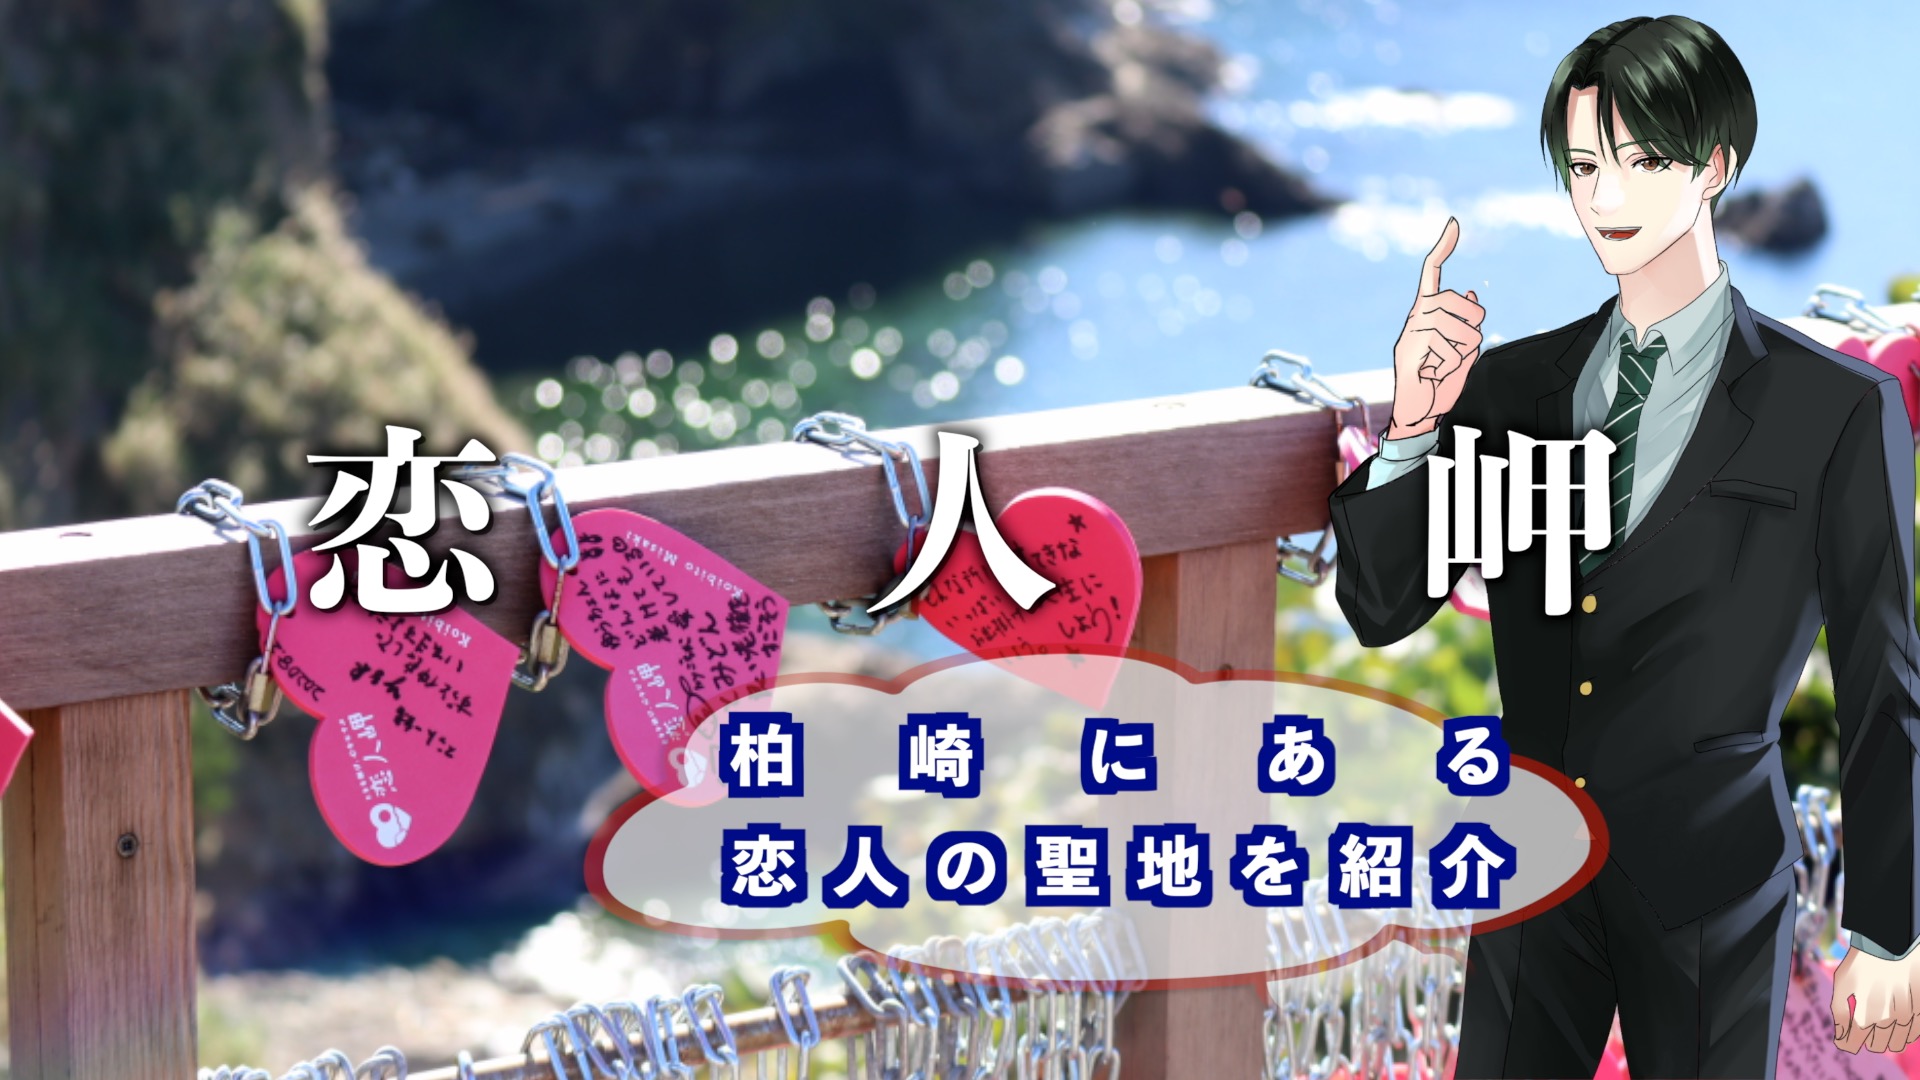 『恋人岬』のアイキャッチ画像